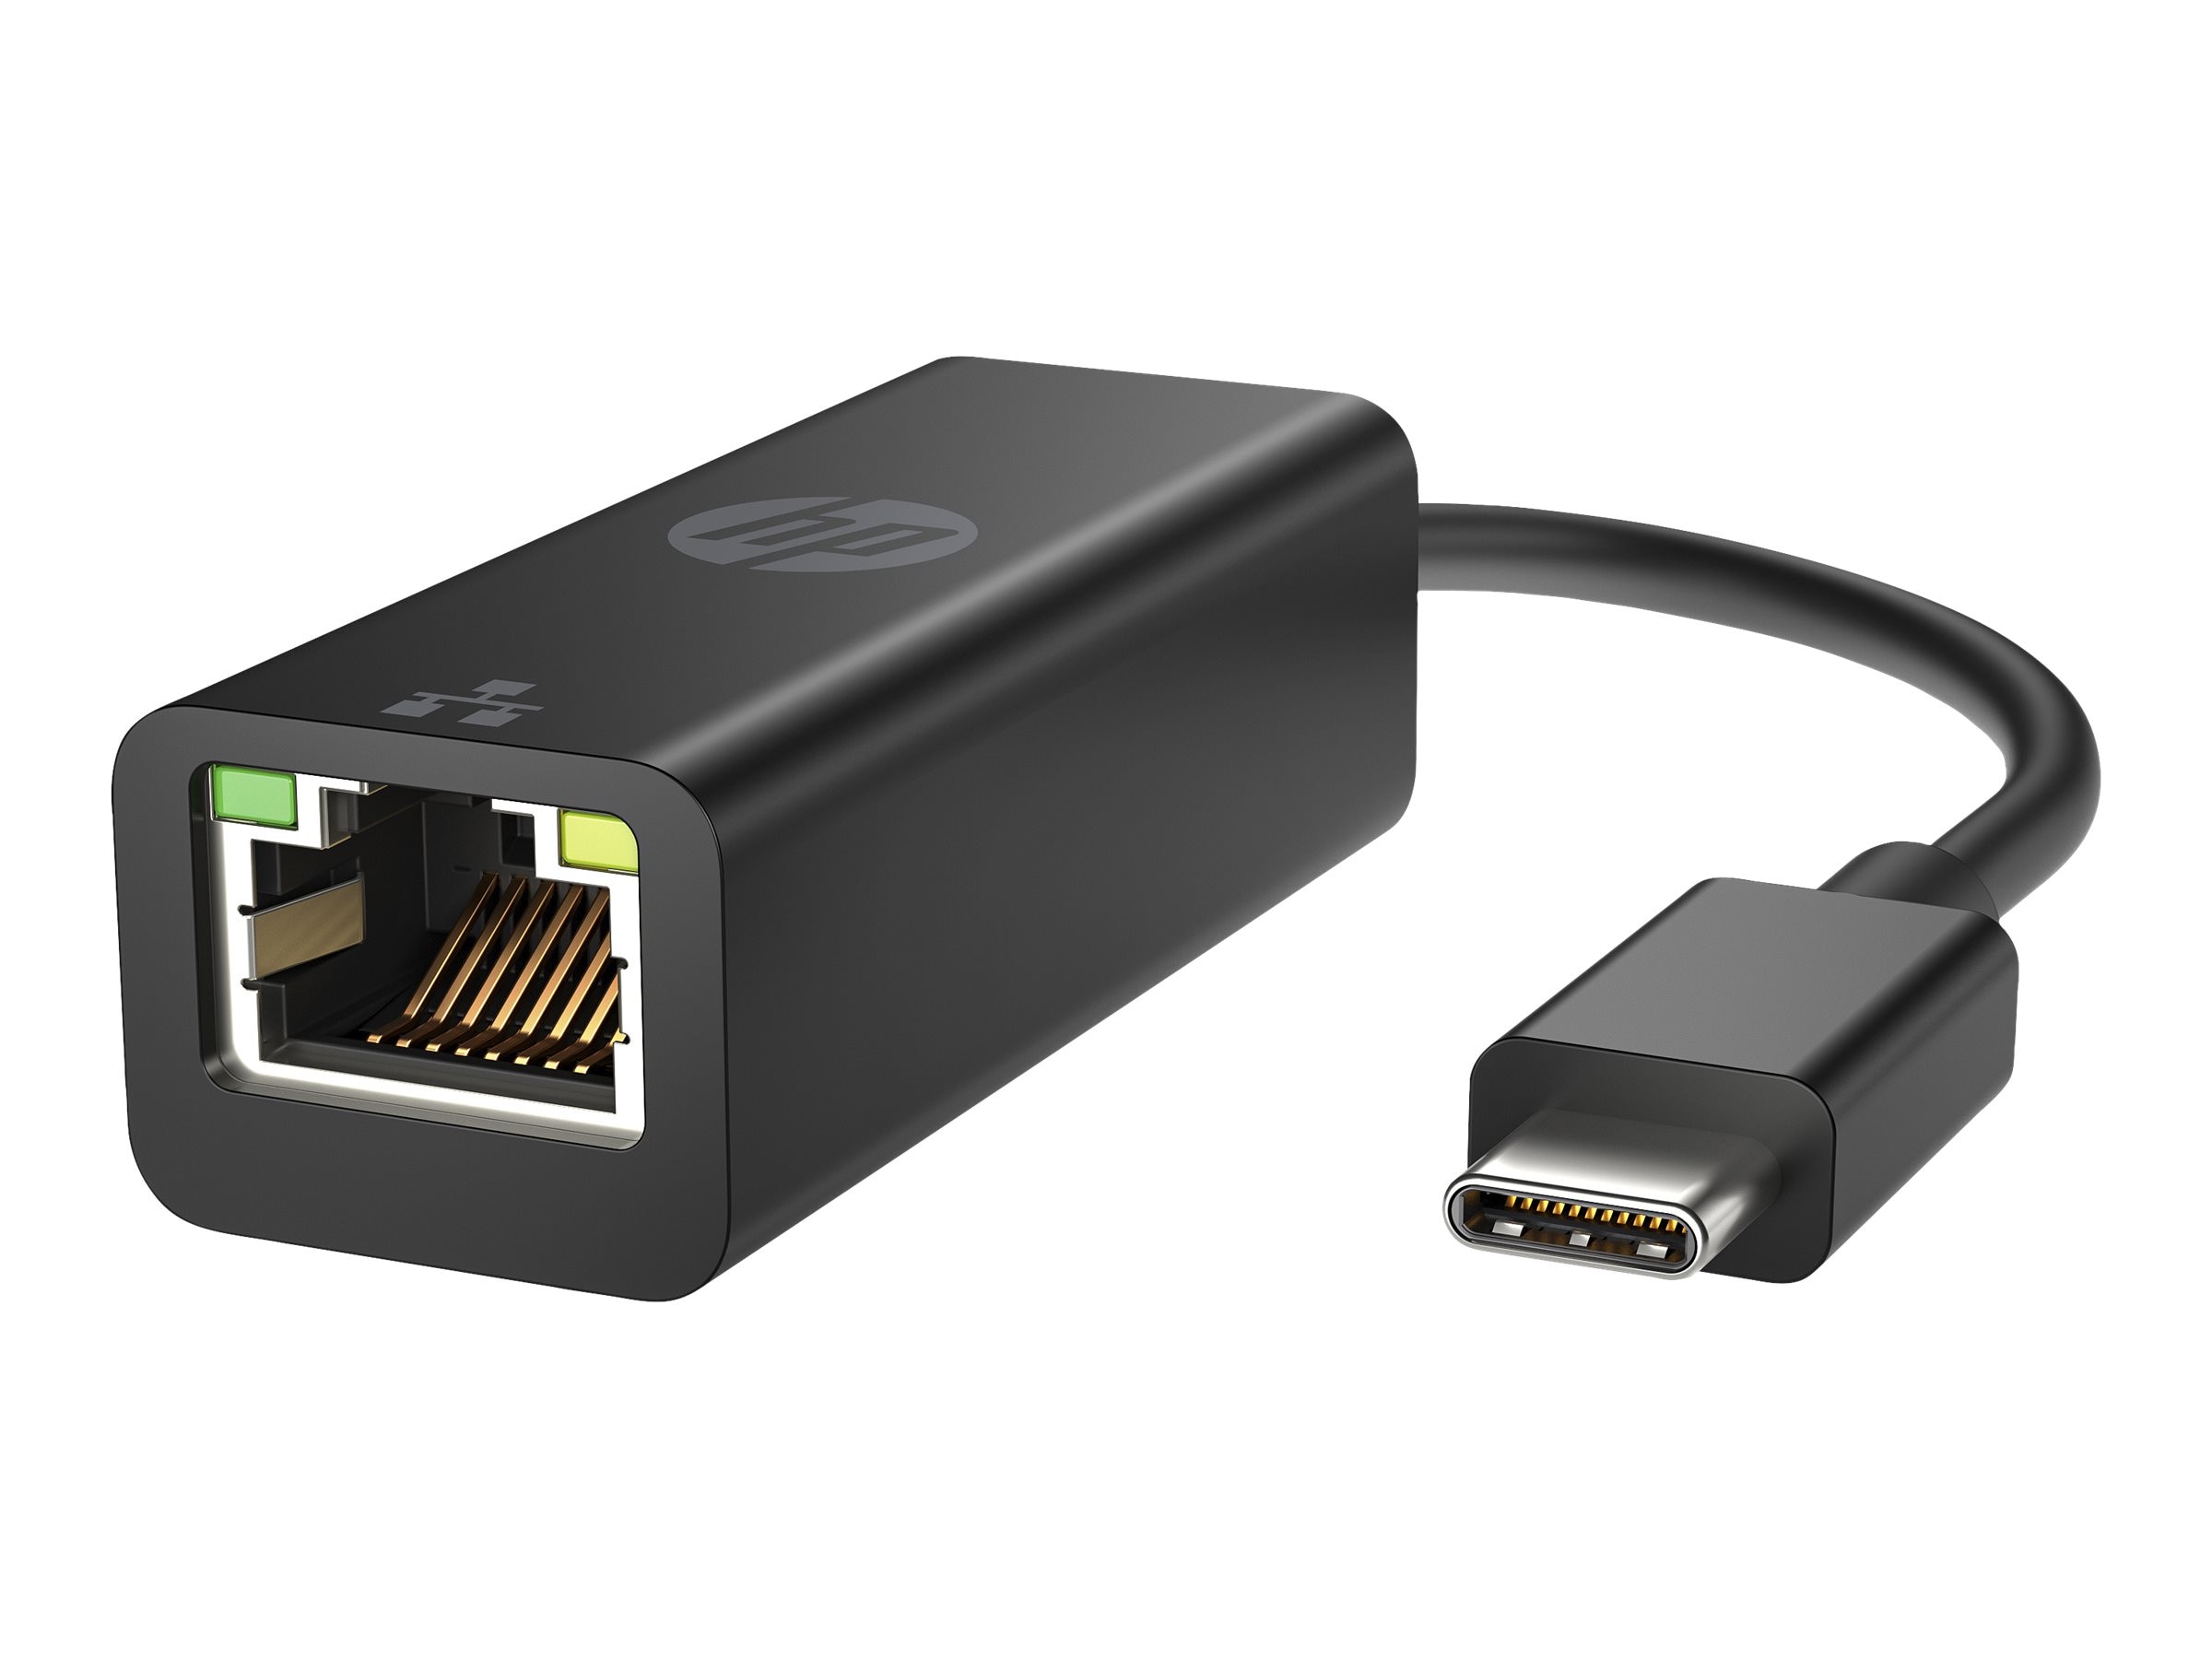 Adaptateur USB C vers Ethernet, USB Type C Ethernet, Adaptateur